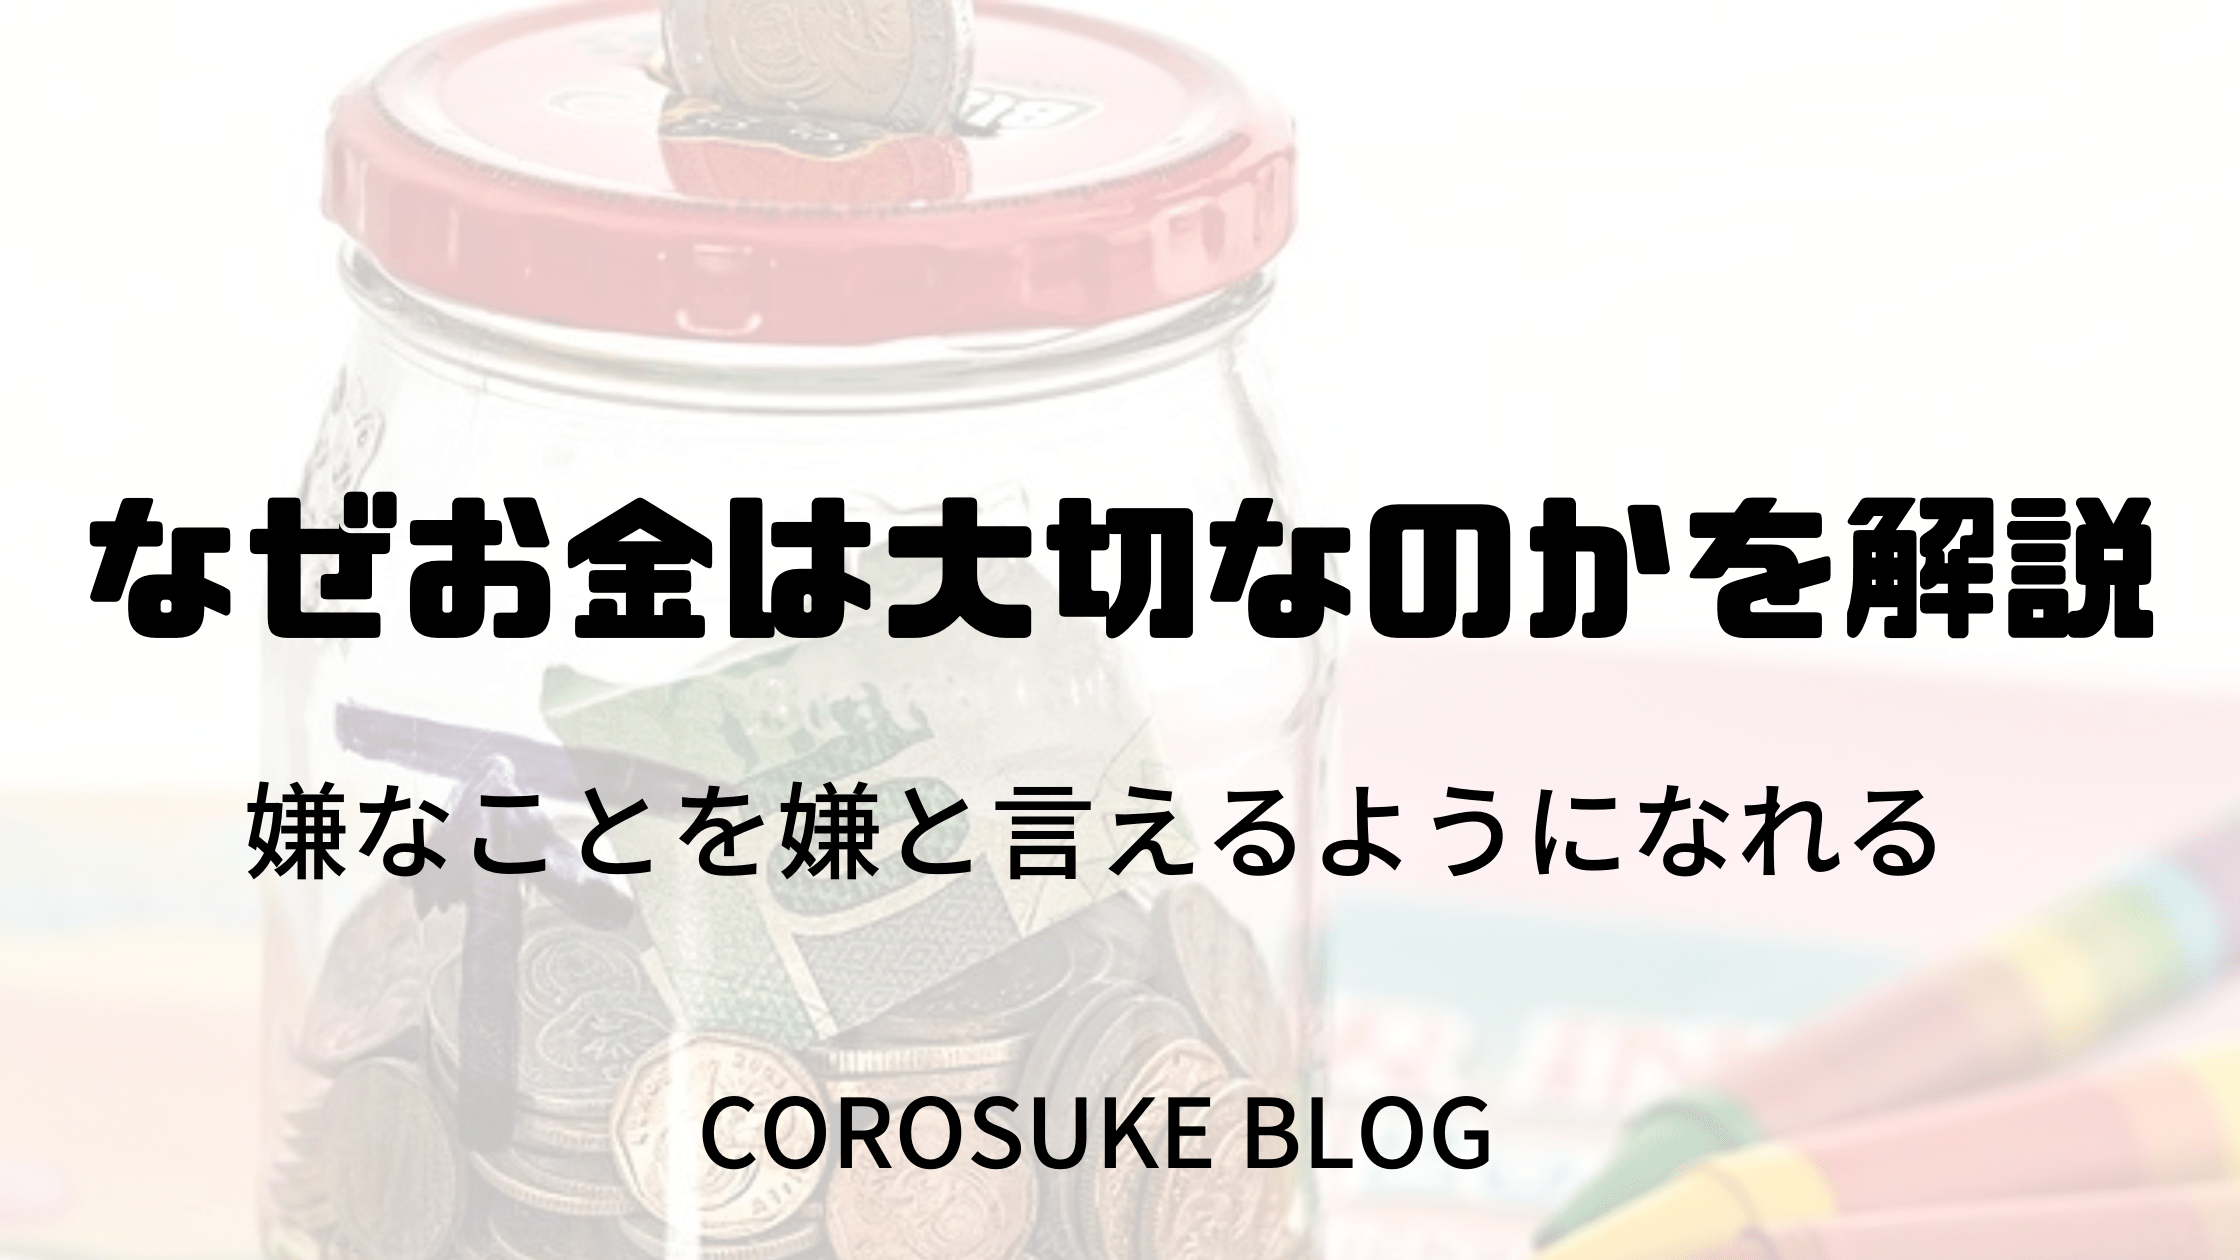 なぜお金は大切なのかを解説 嫌なことを嫌と言えるようになれる Corosuke Blog